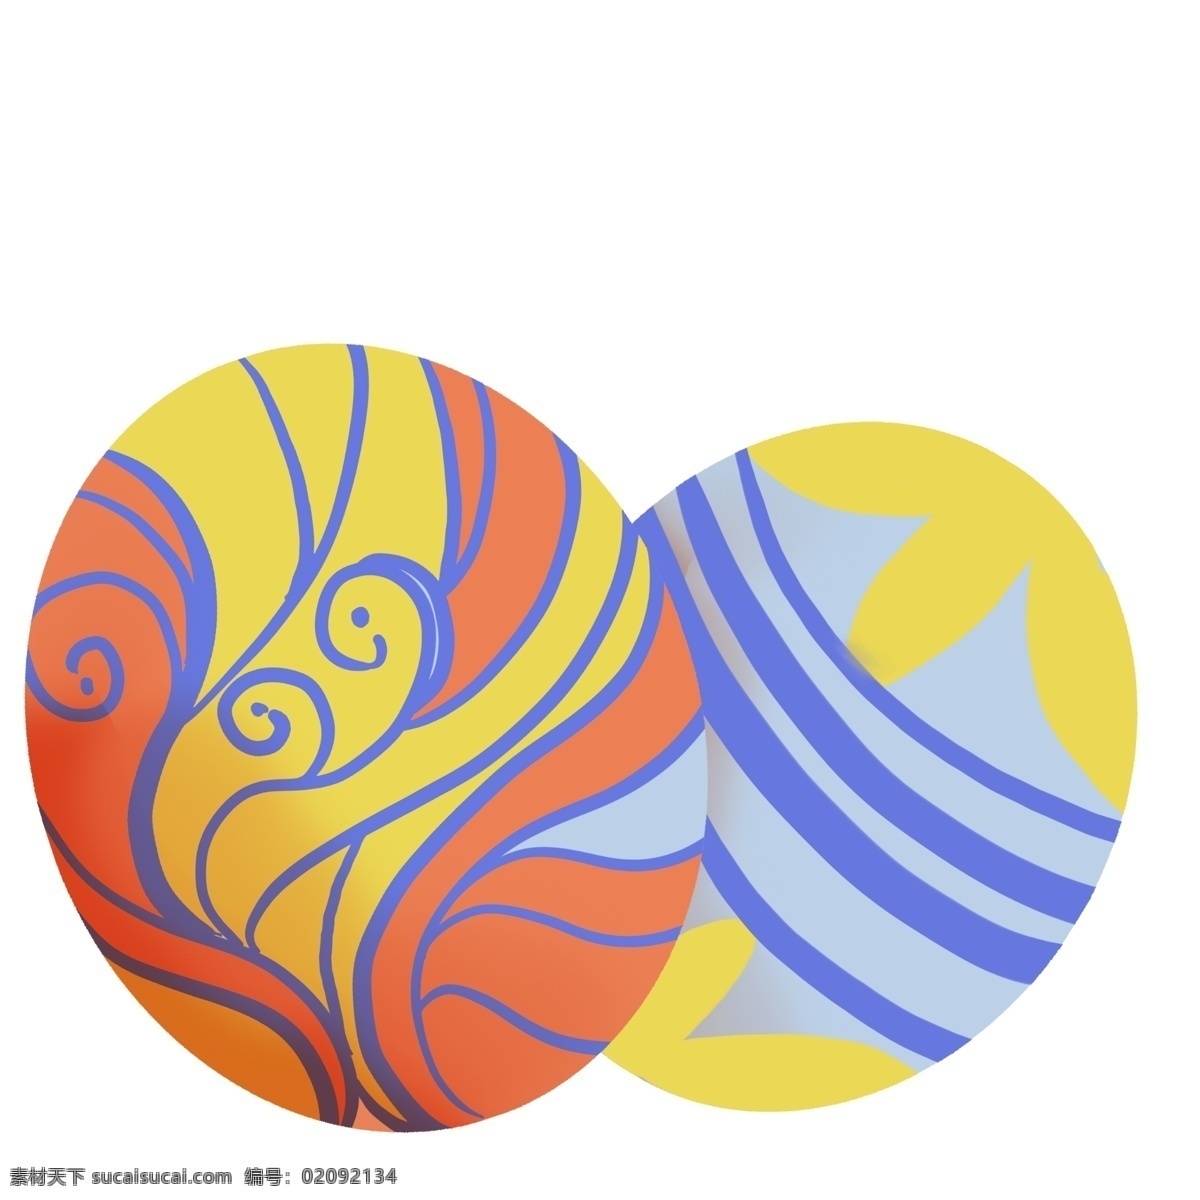 花纹 彩蛋 复活节 插图 精致的彩蛋 花纹彩蛋 复活节设计 圆形彩蛋 卡通彩蛋 时尚的设计 精美的彩蛋